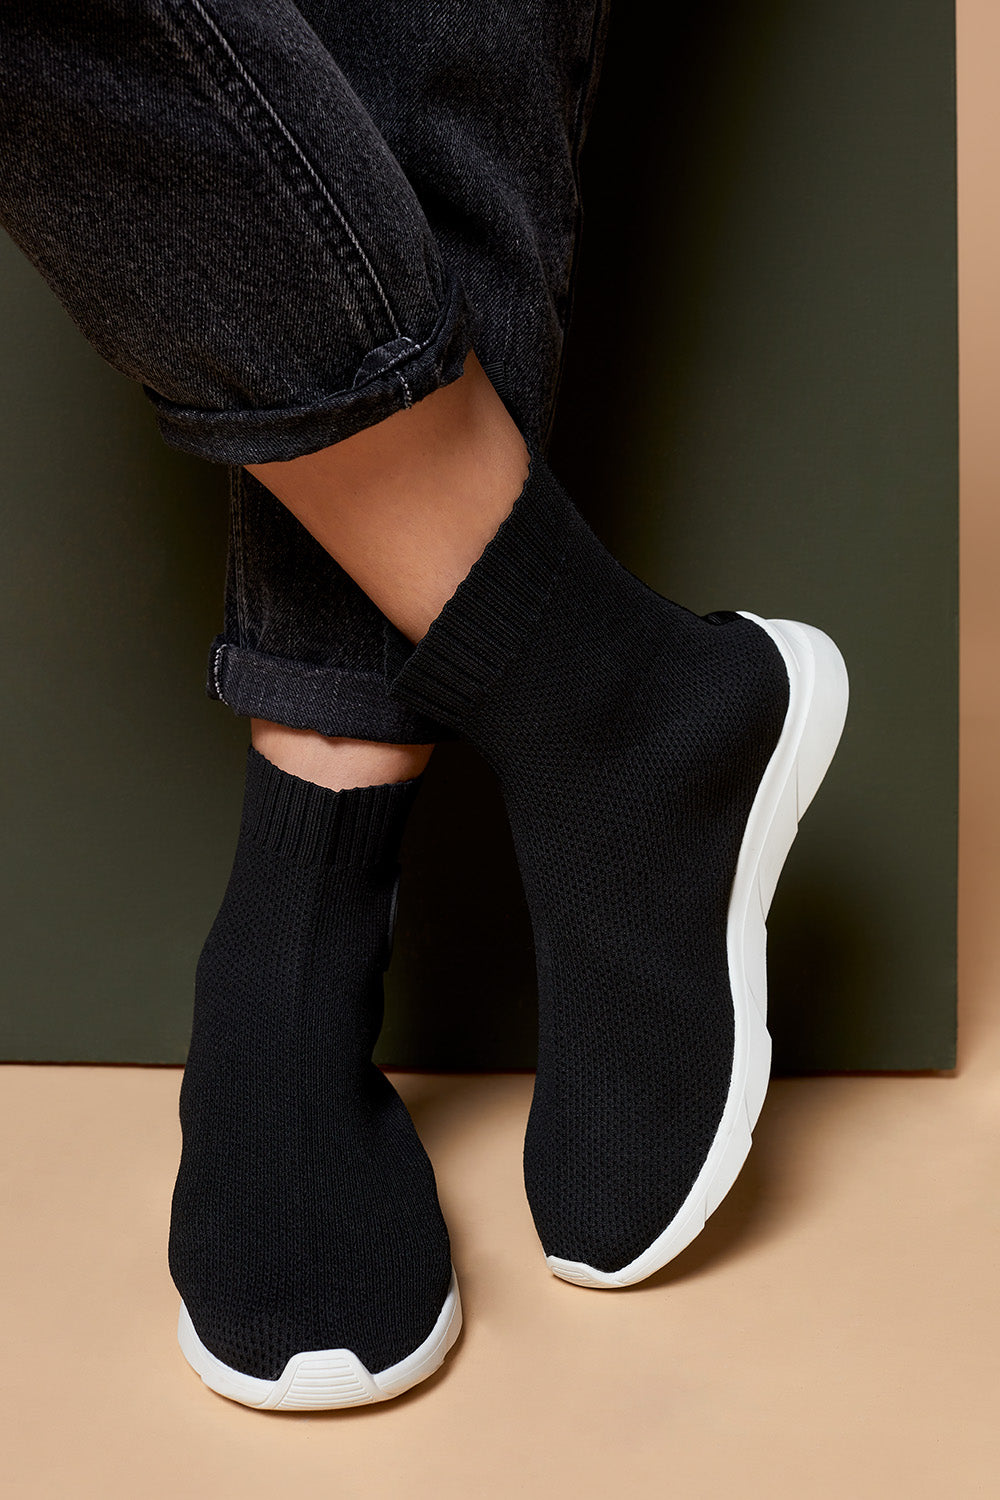 O.JACOU - Boots chaussettes noirs en textile